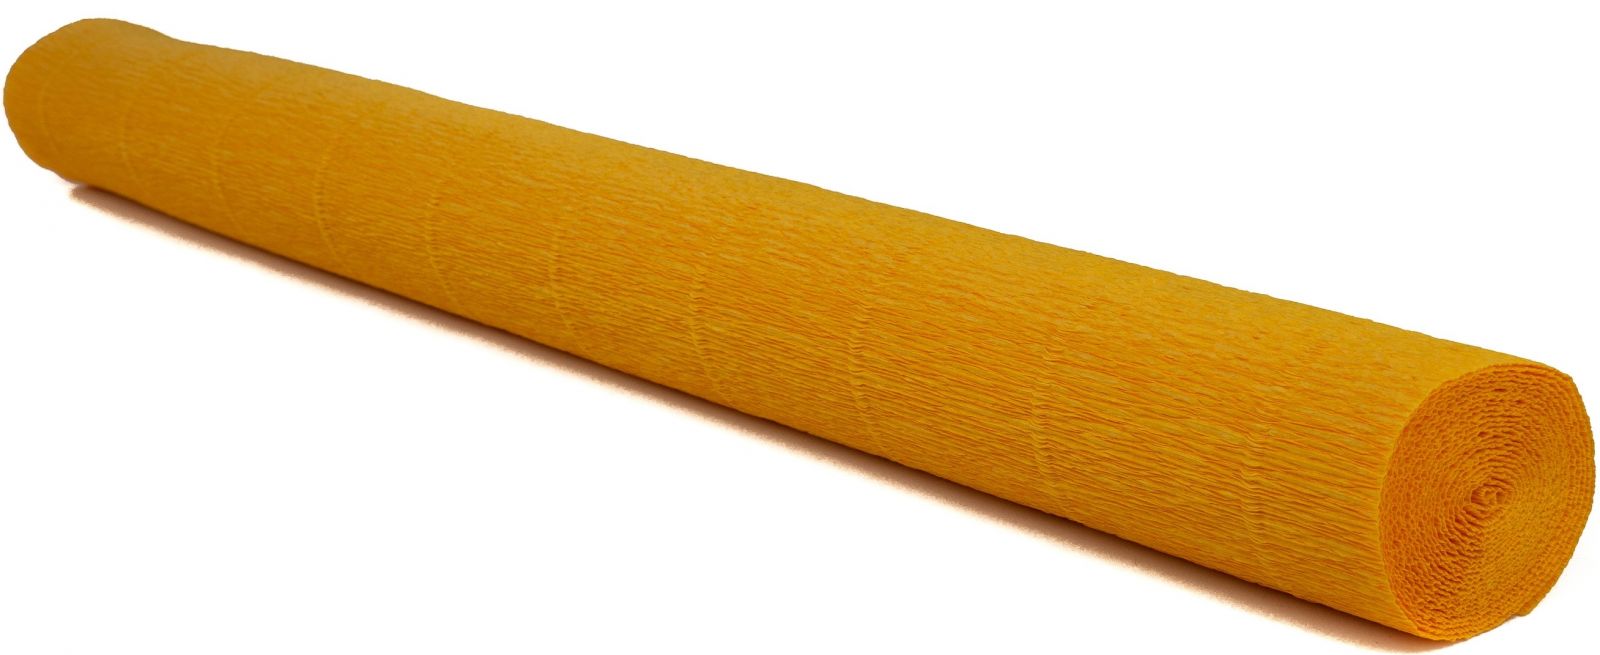 Krepový papír EXTRA pevný 180g, 50x200cm - k výrobě květů a jiné dekorace - Sluneční žlutá